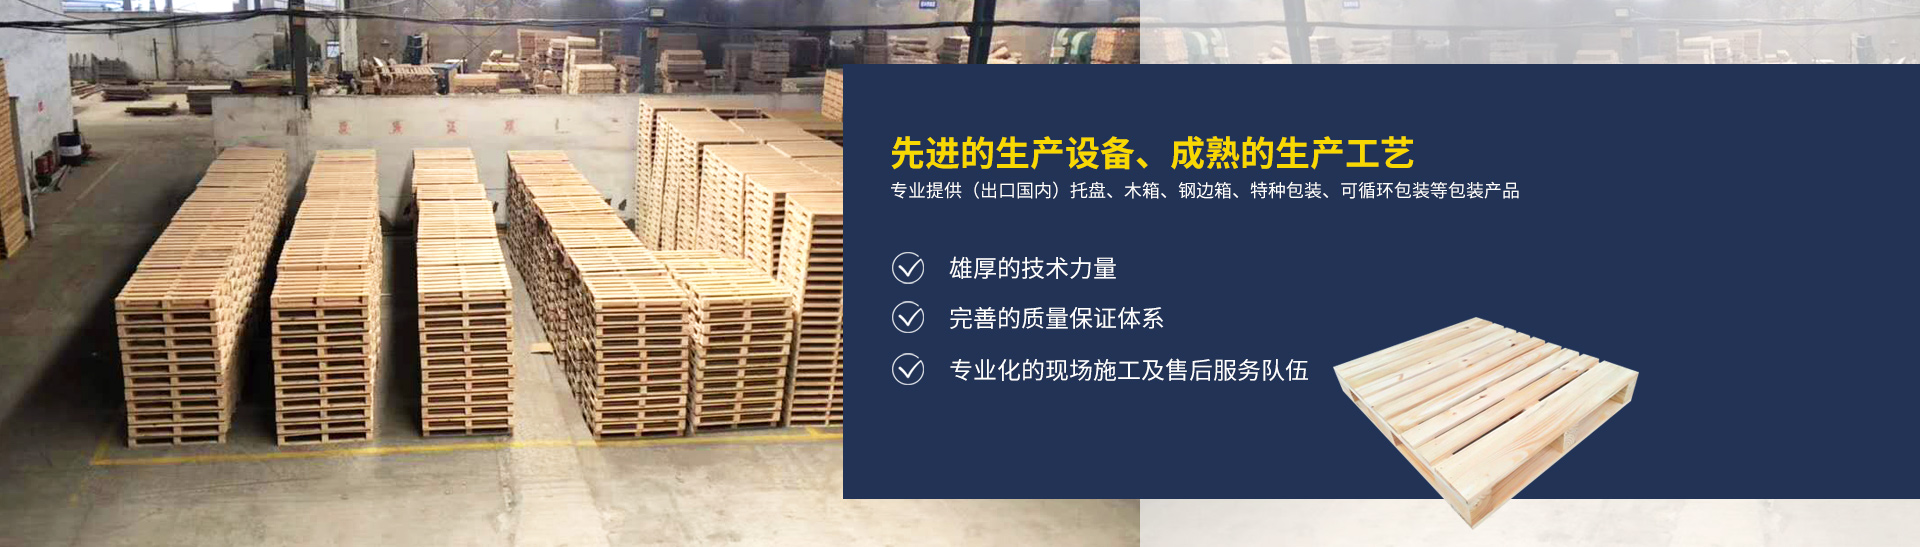 湖南省全亞物流裝備制造有限公司_長沙托盤生產|長沙木箱供應|特種包裝